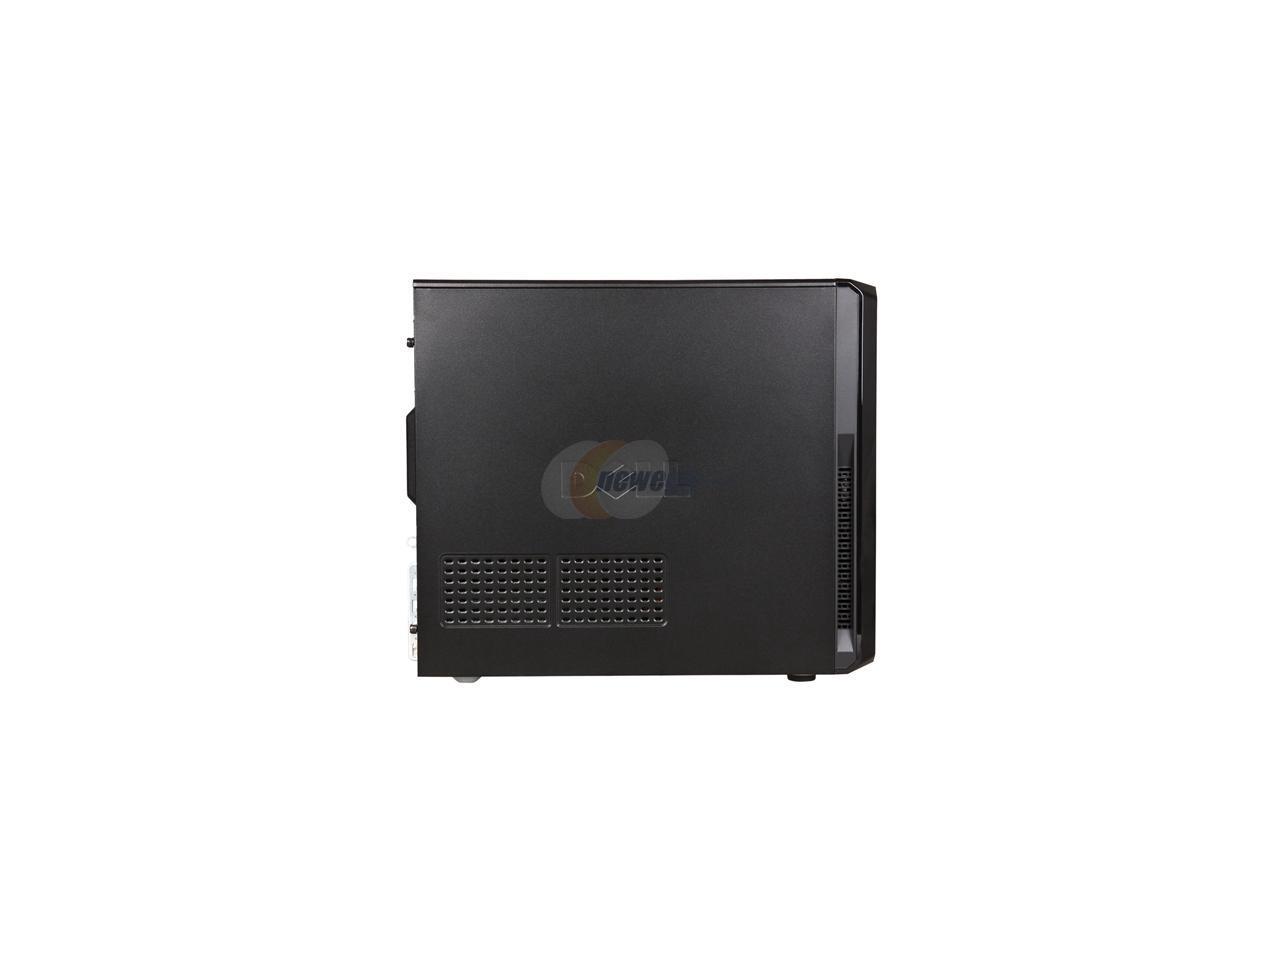 DELL Desktop PC Vostro 230 MT(468-5910) Core 2 Duo E7500 (2.93 GHz) 3